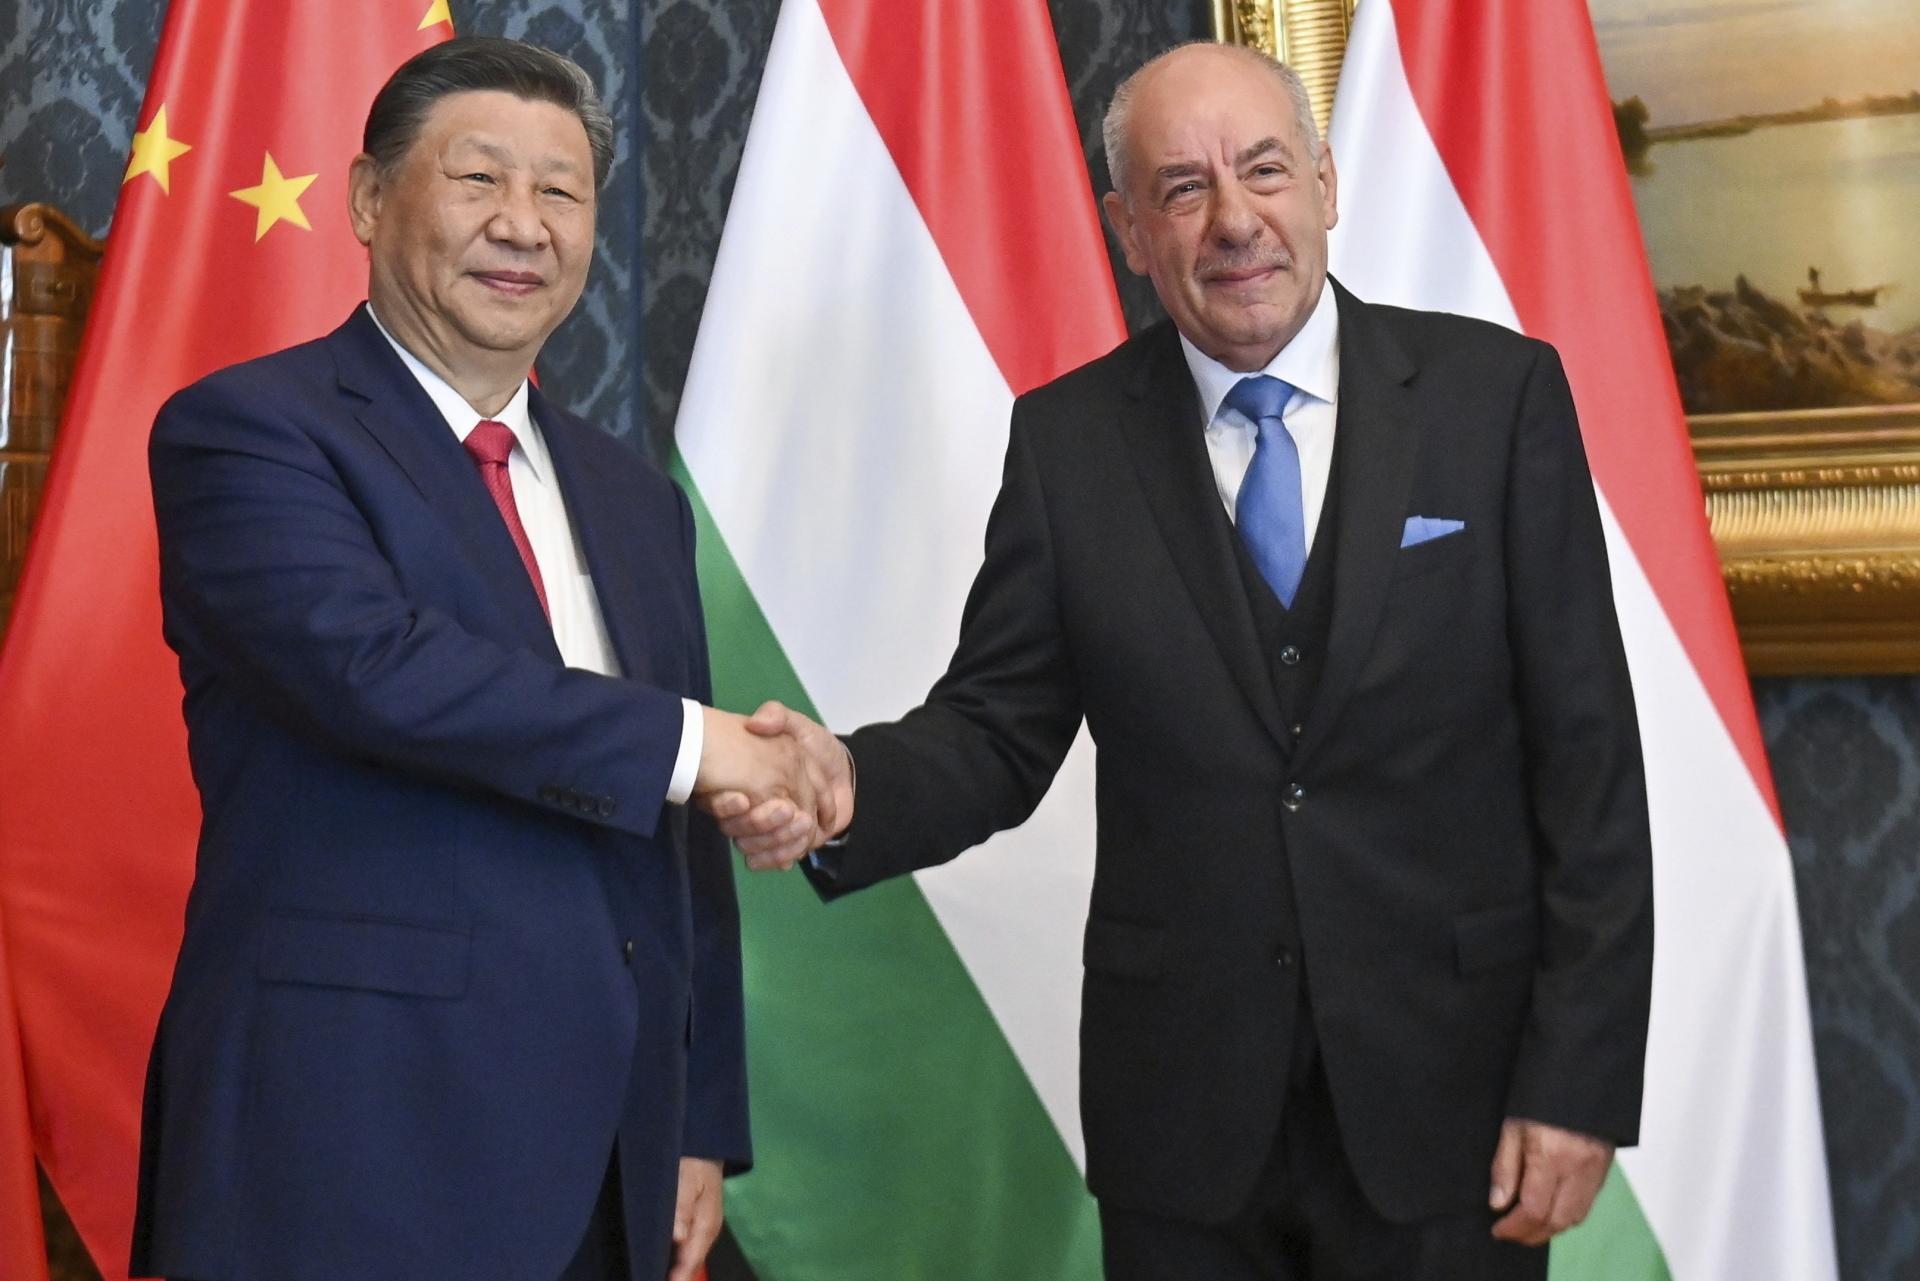 Čína je pilierom nového svetového poriadku, tvrdí Orbán a rozširuje jadrovú spoluprácu s Pekingom